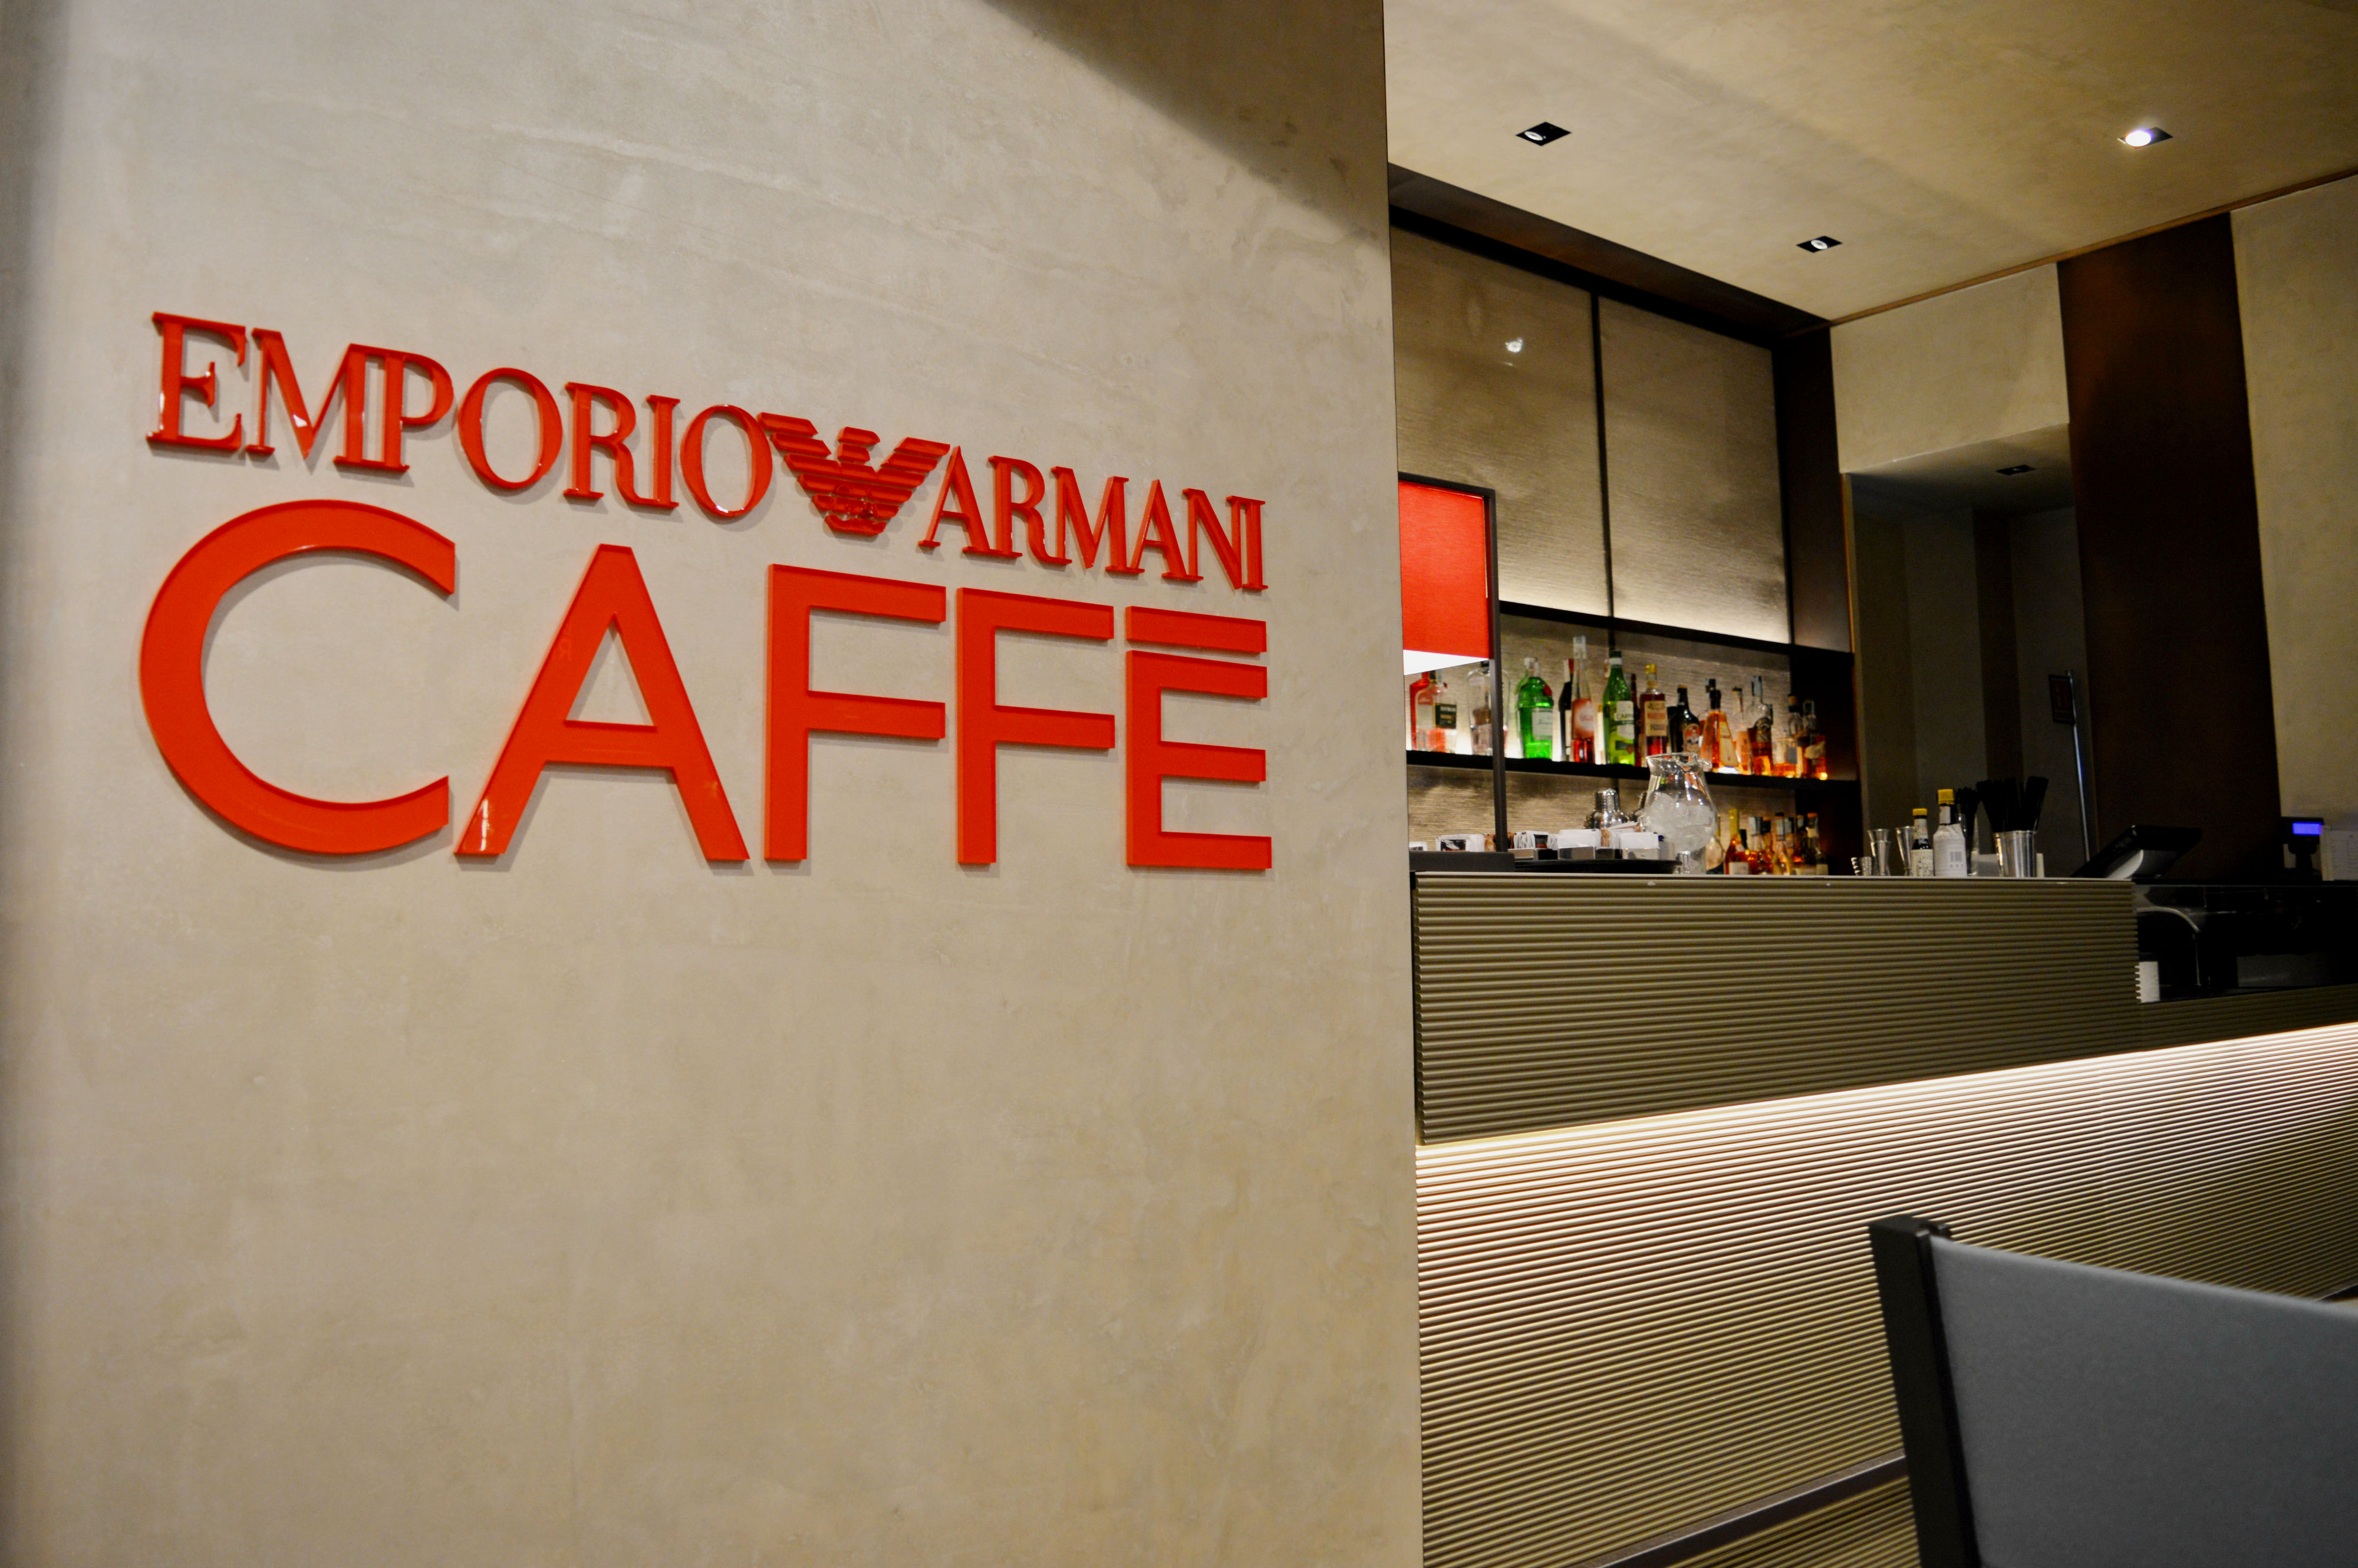 Aperitivo in Galleria, arrivano i Giovedì dell'Emporio Armani Caffè -  BoLOVEgna